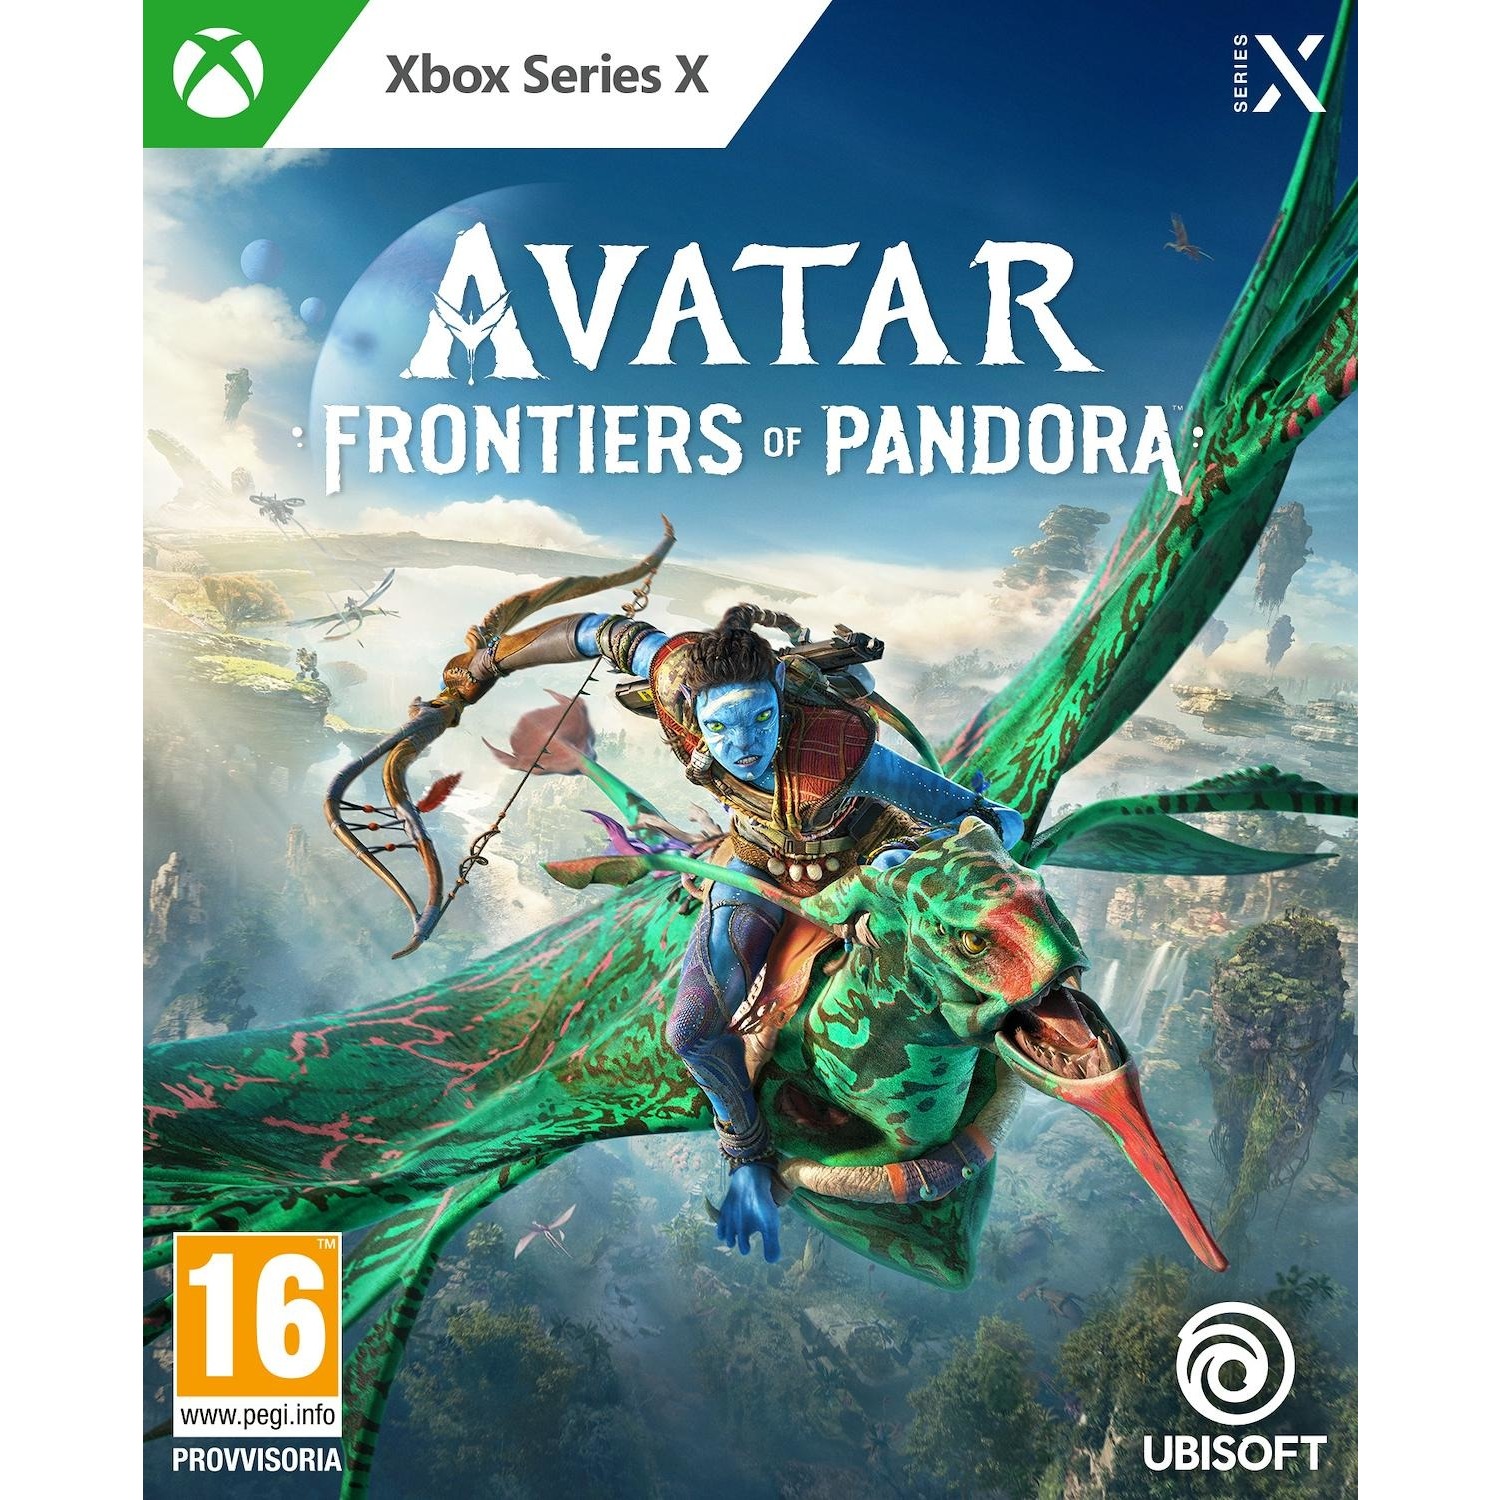 Immagine per Gioco XBOX Series X Avatar: Frontiers of Pandora da DIMOStore